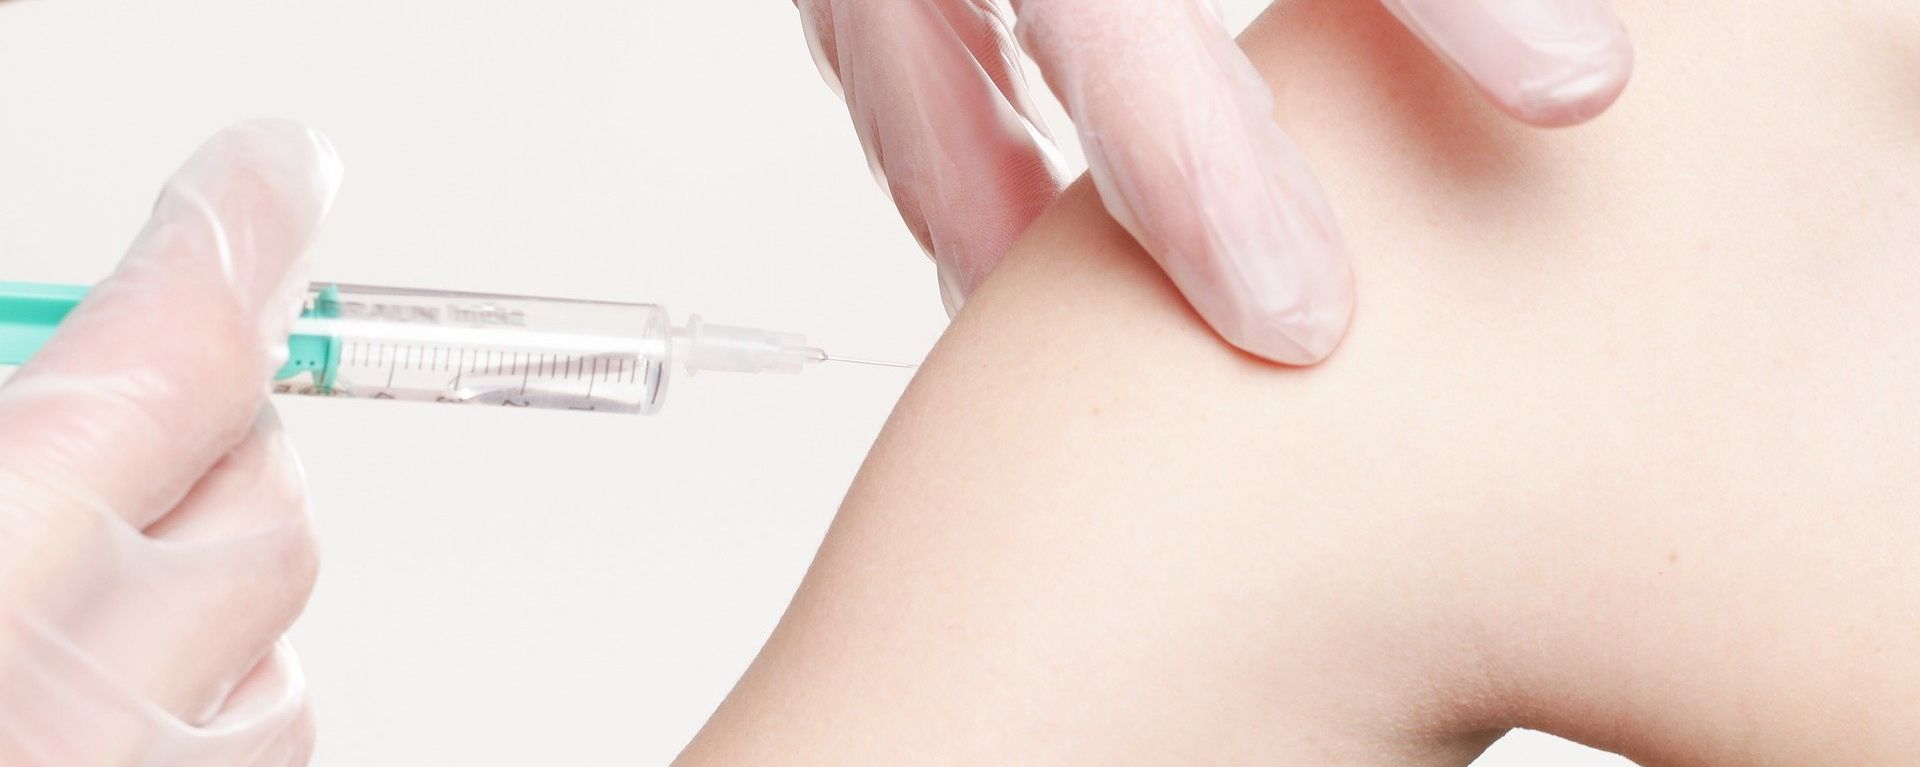 Symbolbild Impfung